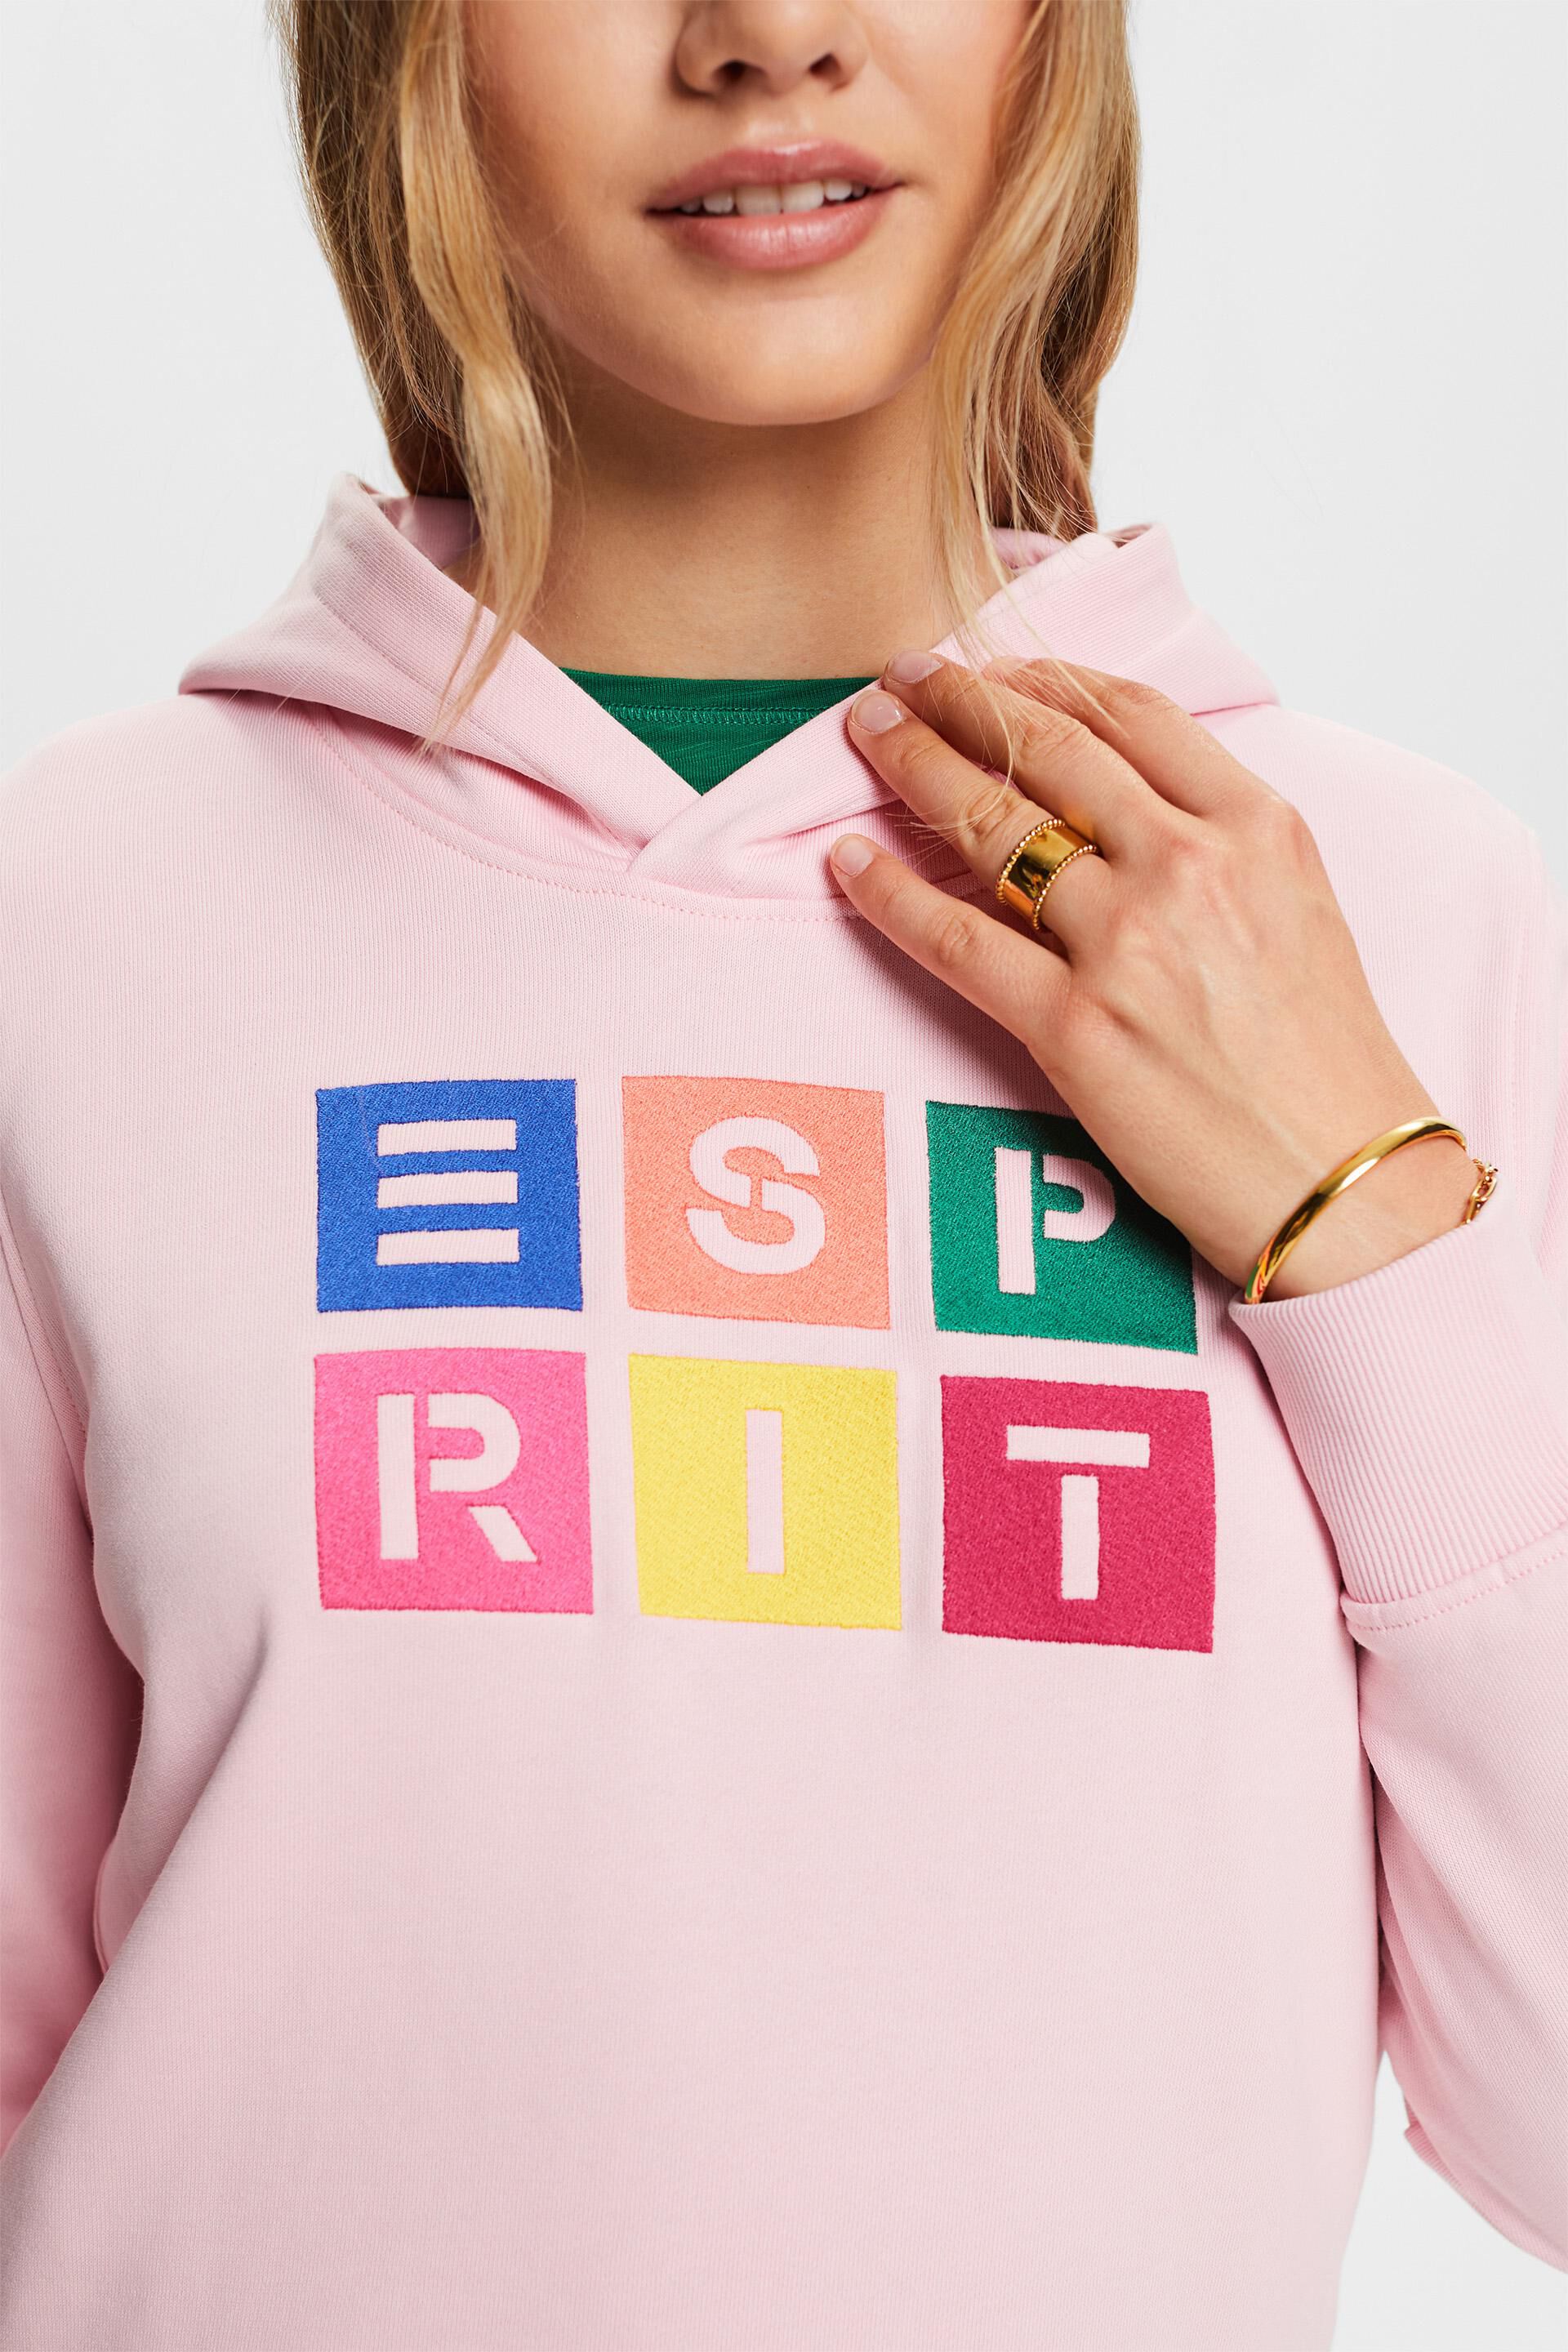 Esprit Damen Kapuzenpullover mit Bio-Baumwolle aufgesticktem Logo